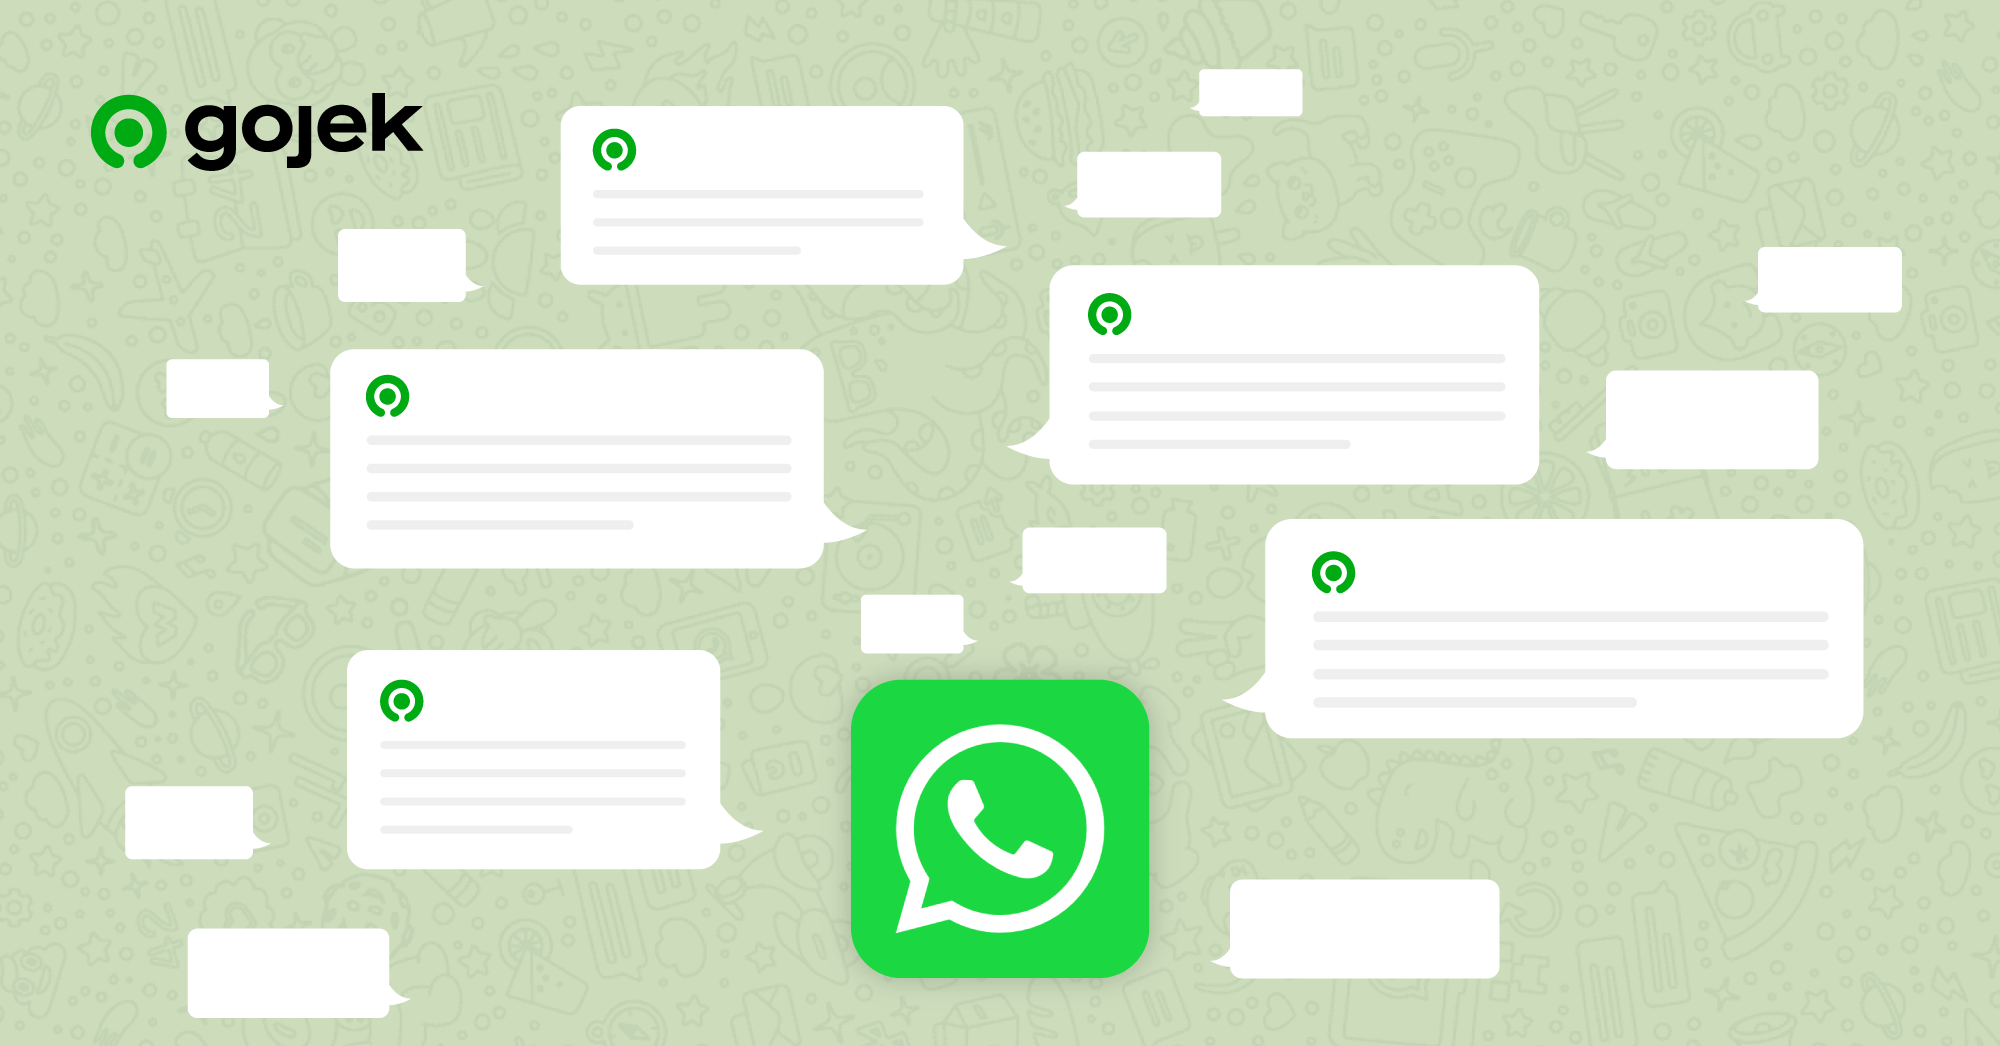 WhatsApp <> Gojek -  An experiment